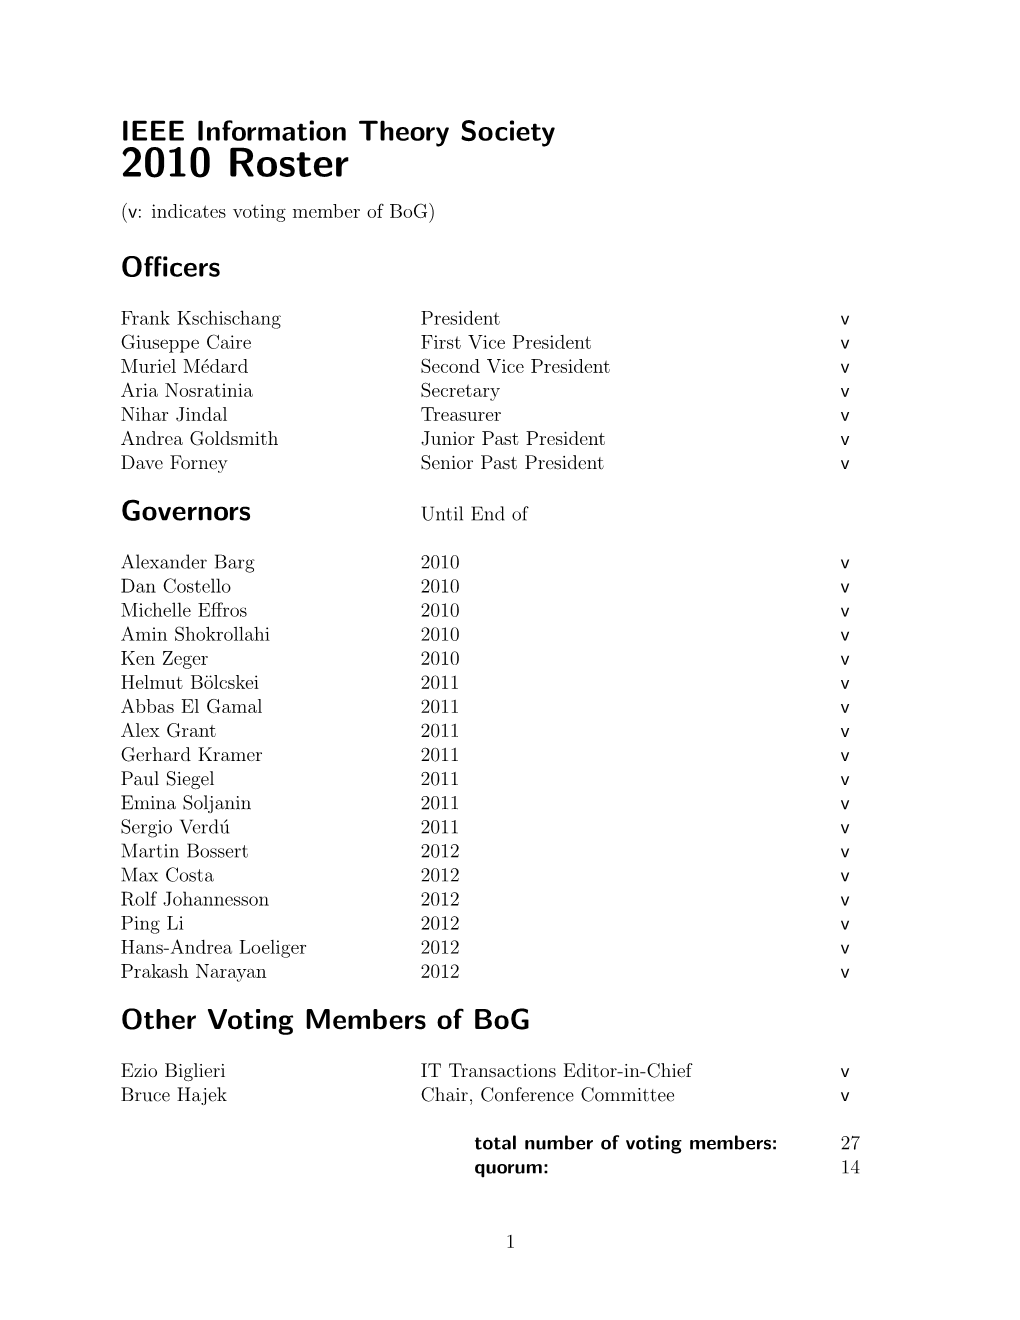 2010 Roster (V: Indicates Voting Member of Bog)